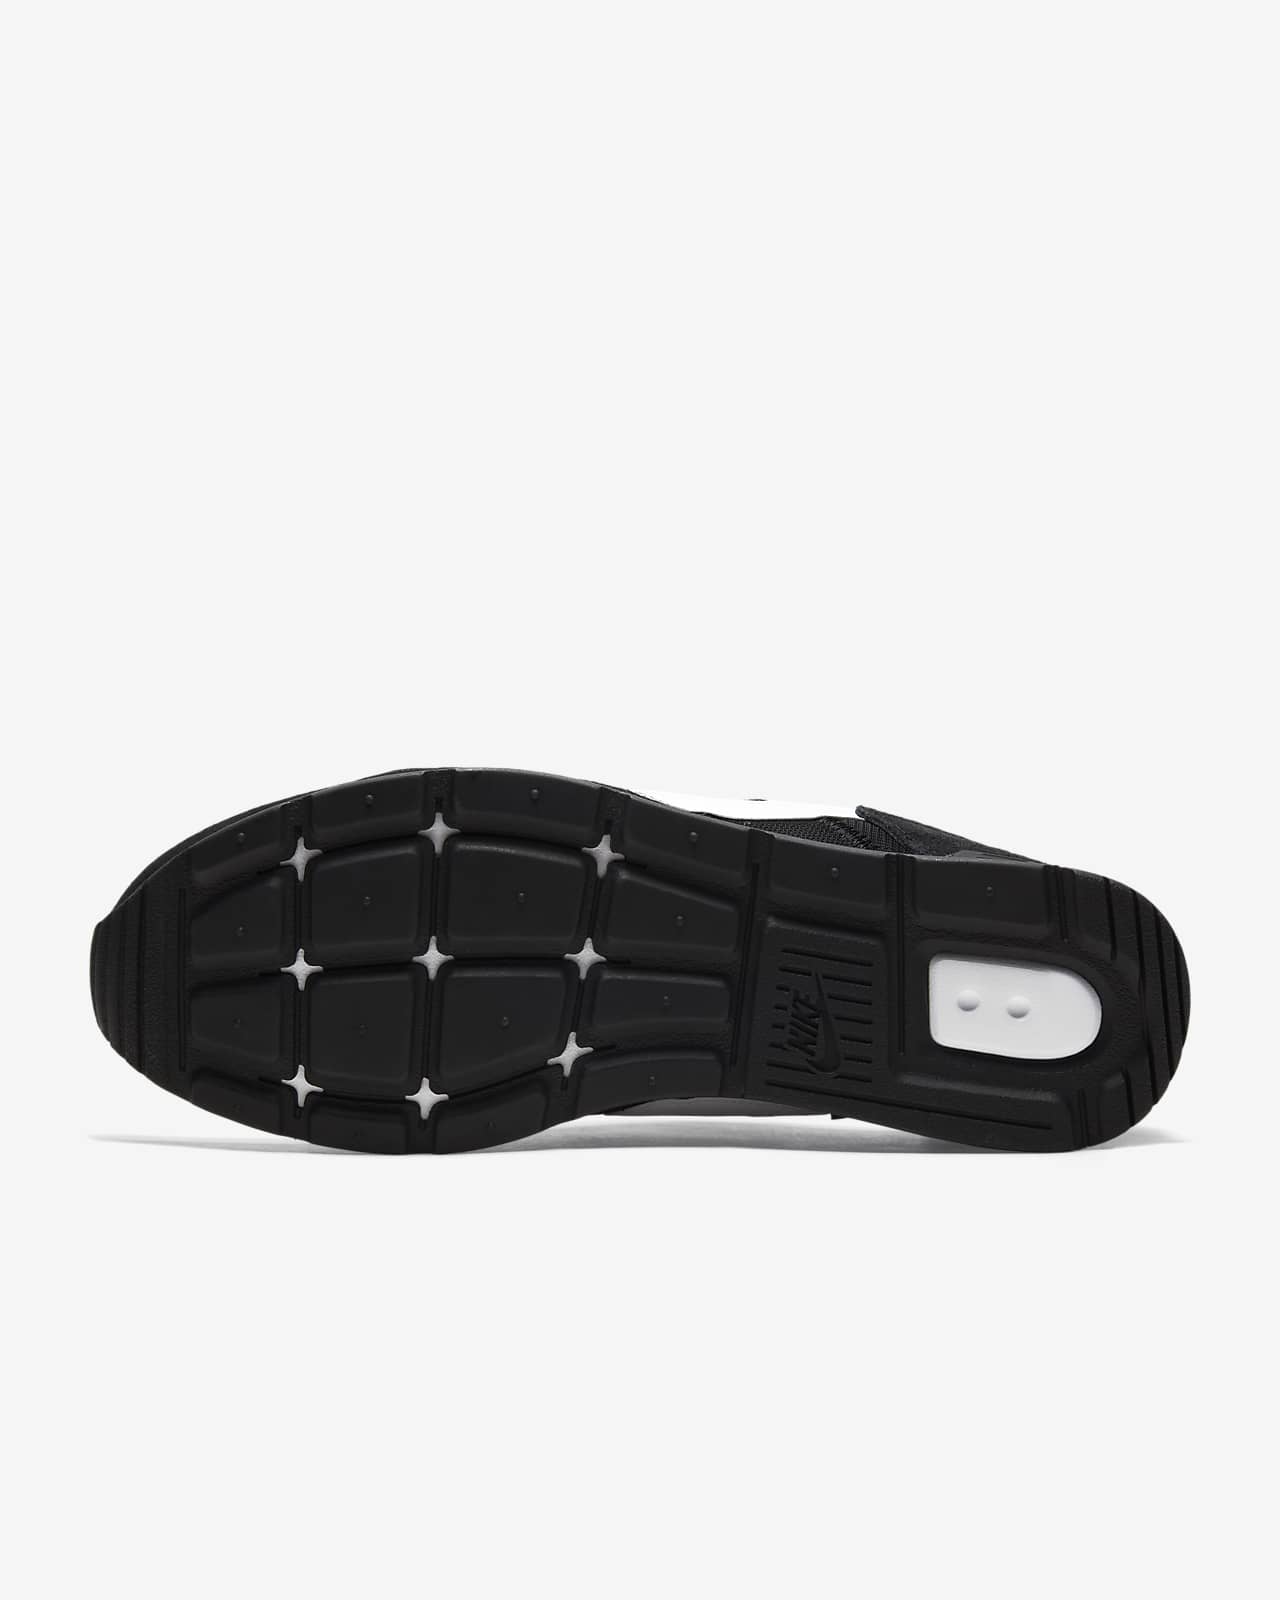 Nike Venture Runner Men's Shoe